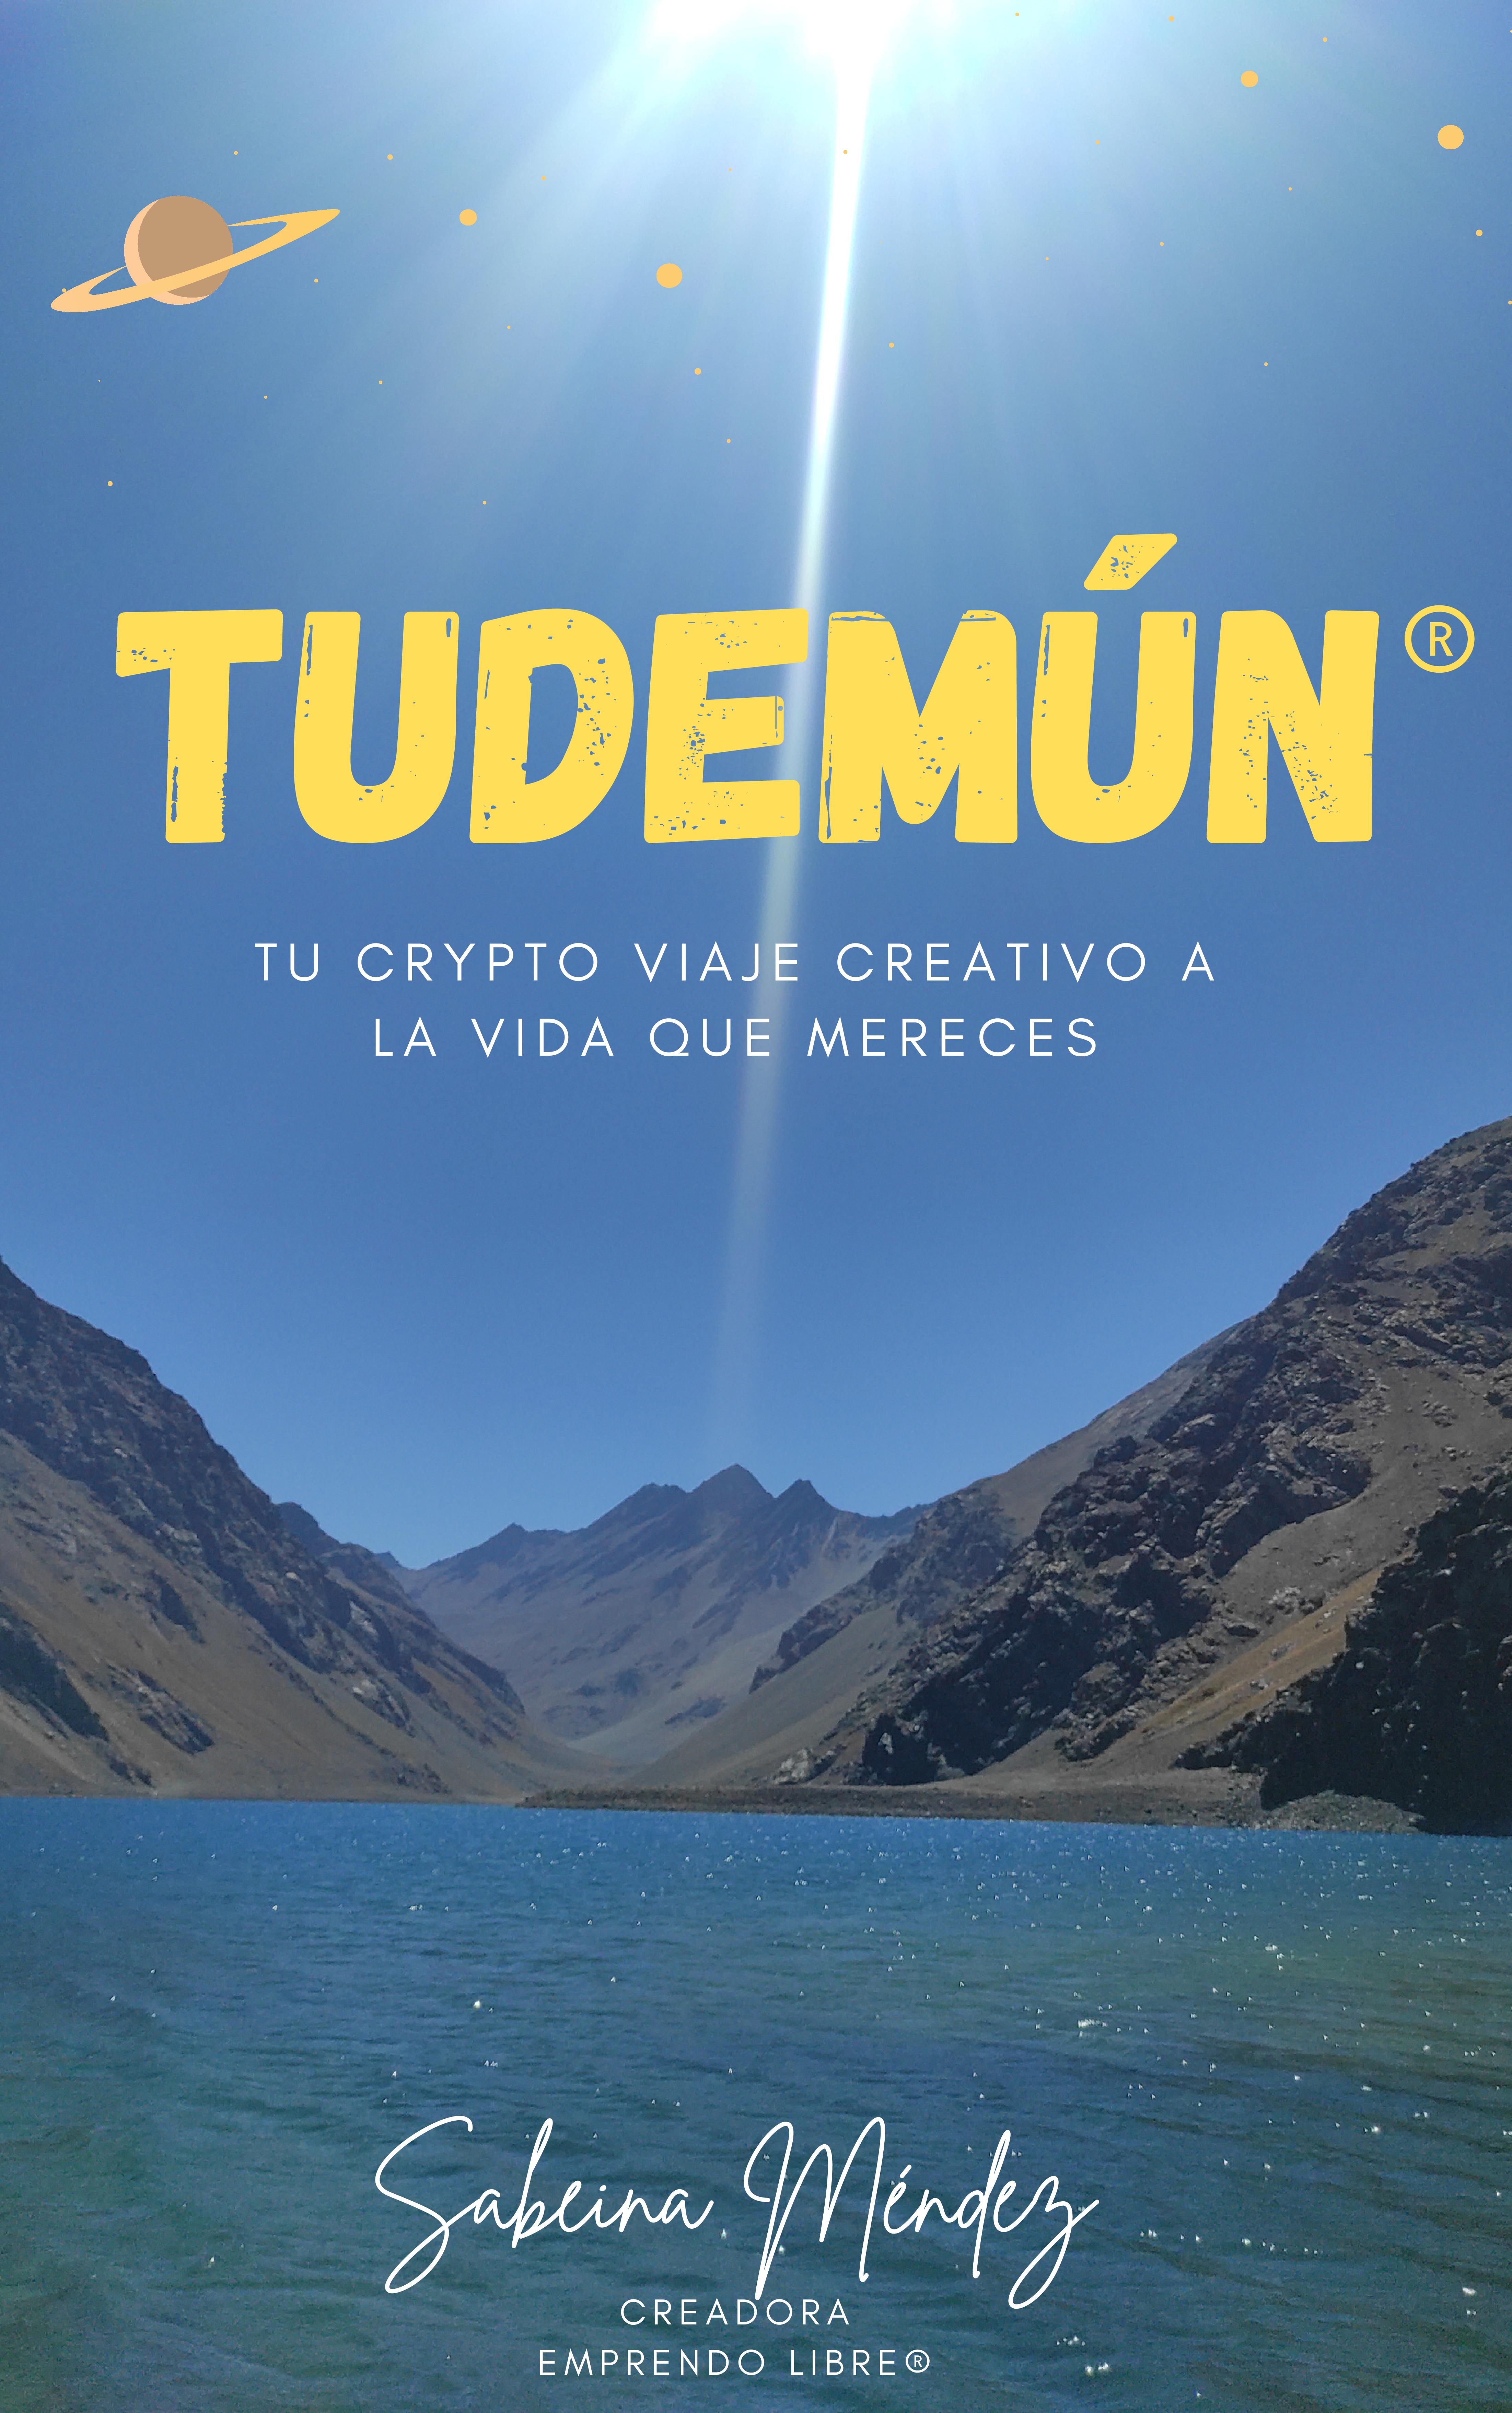 TUDEMUN®- primer libro digital de Emprendo Libre